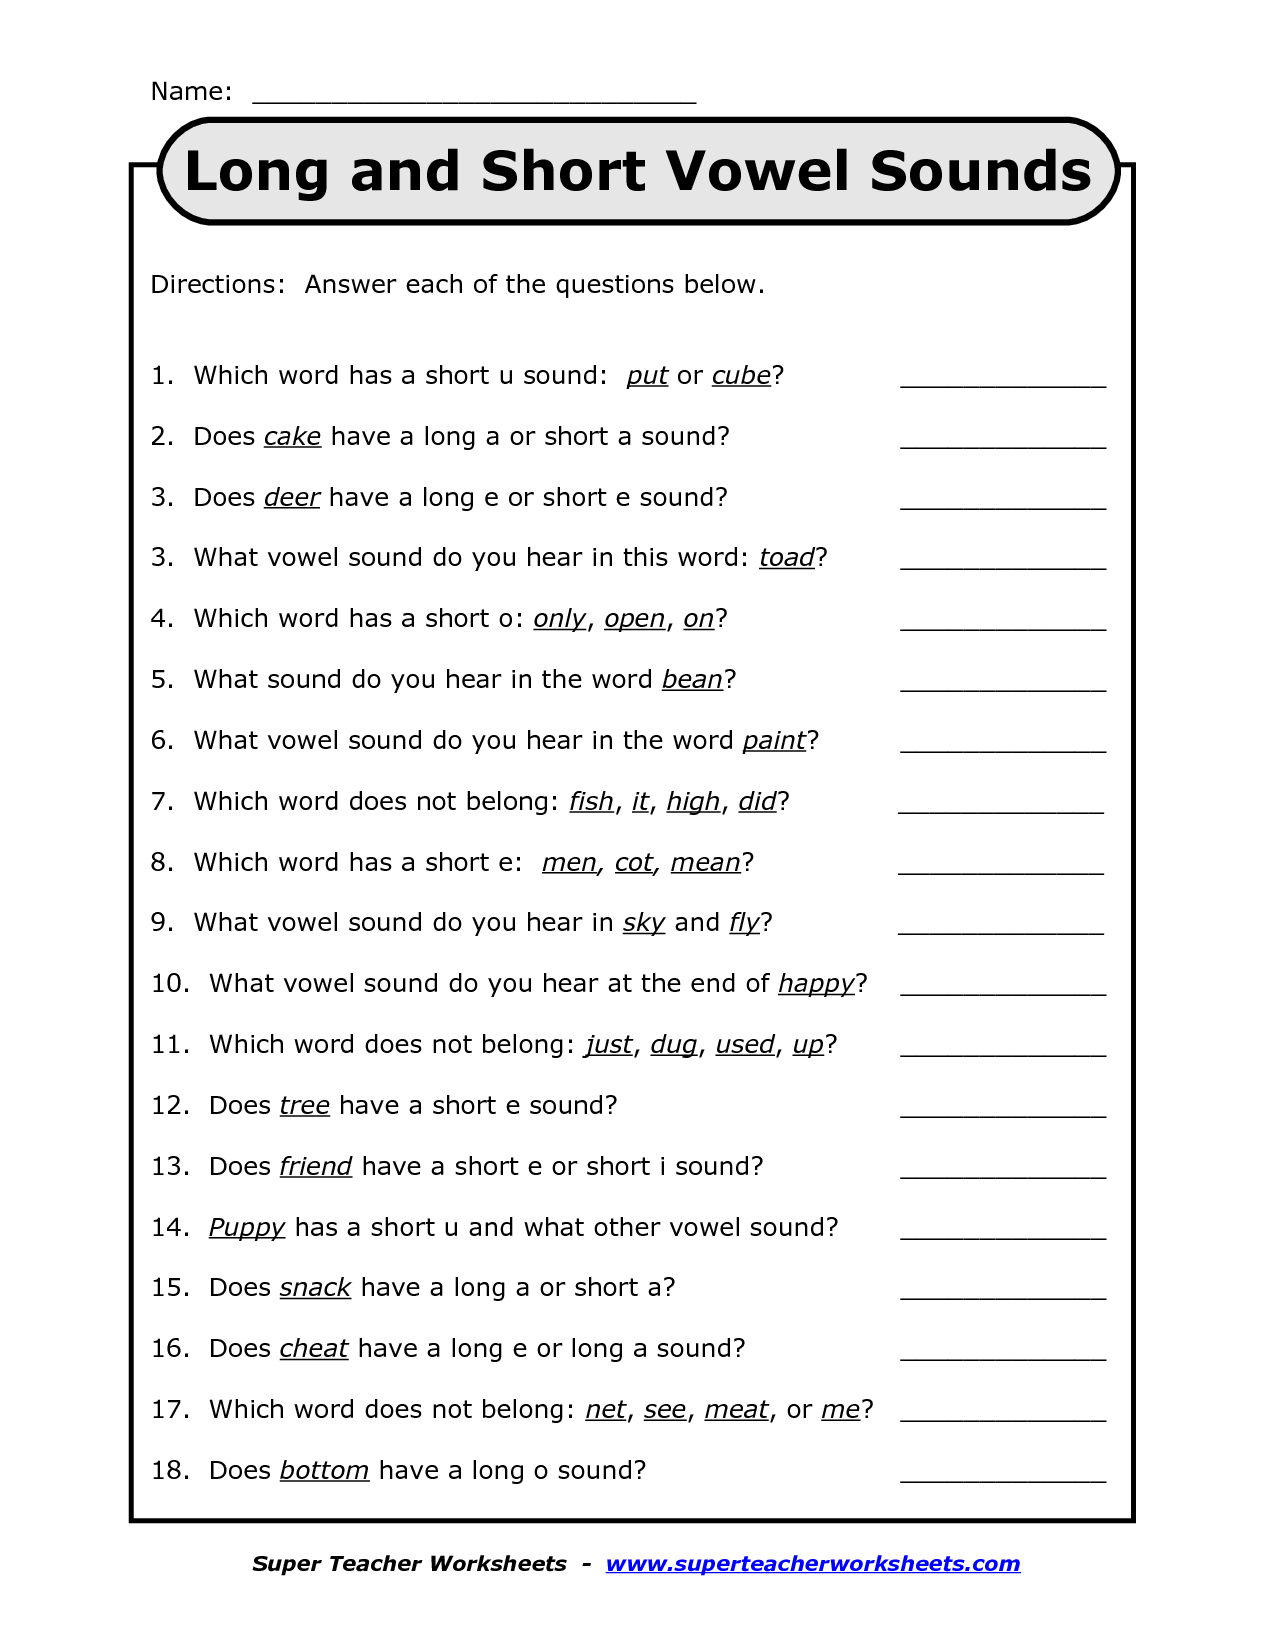 Long or Short Vowel Sound? Worksheet for kids